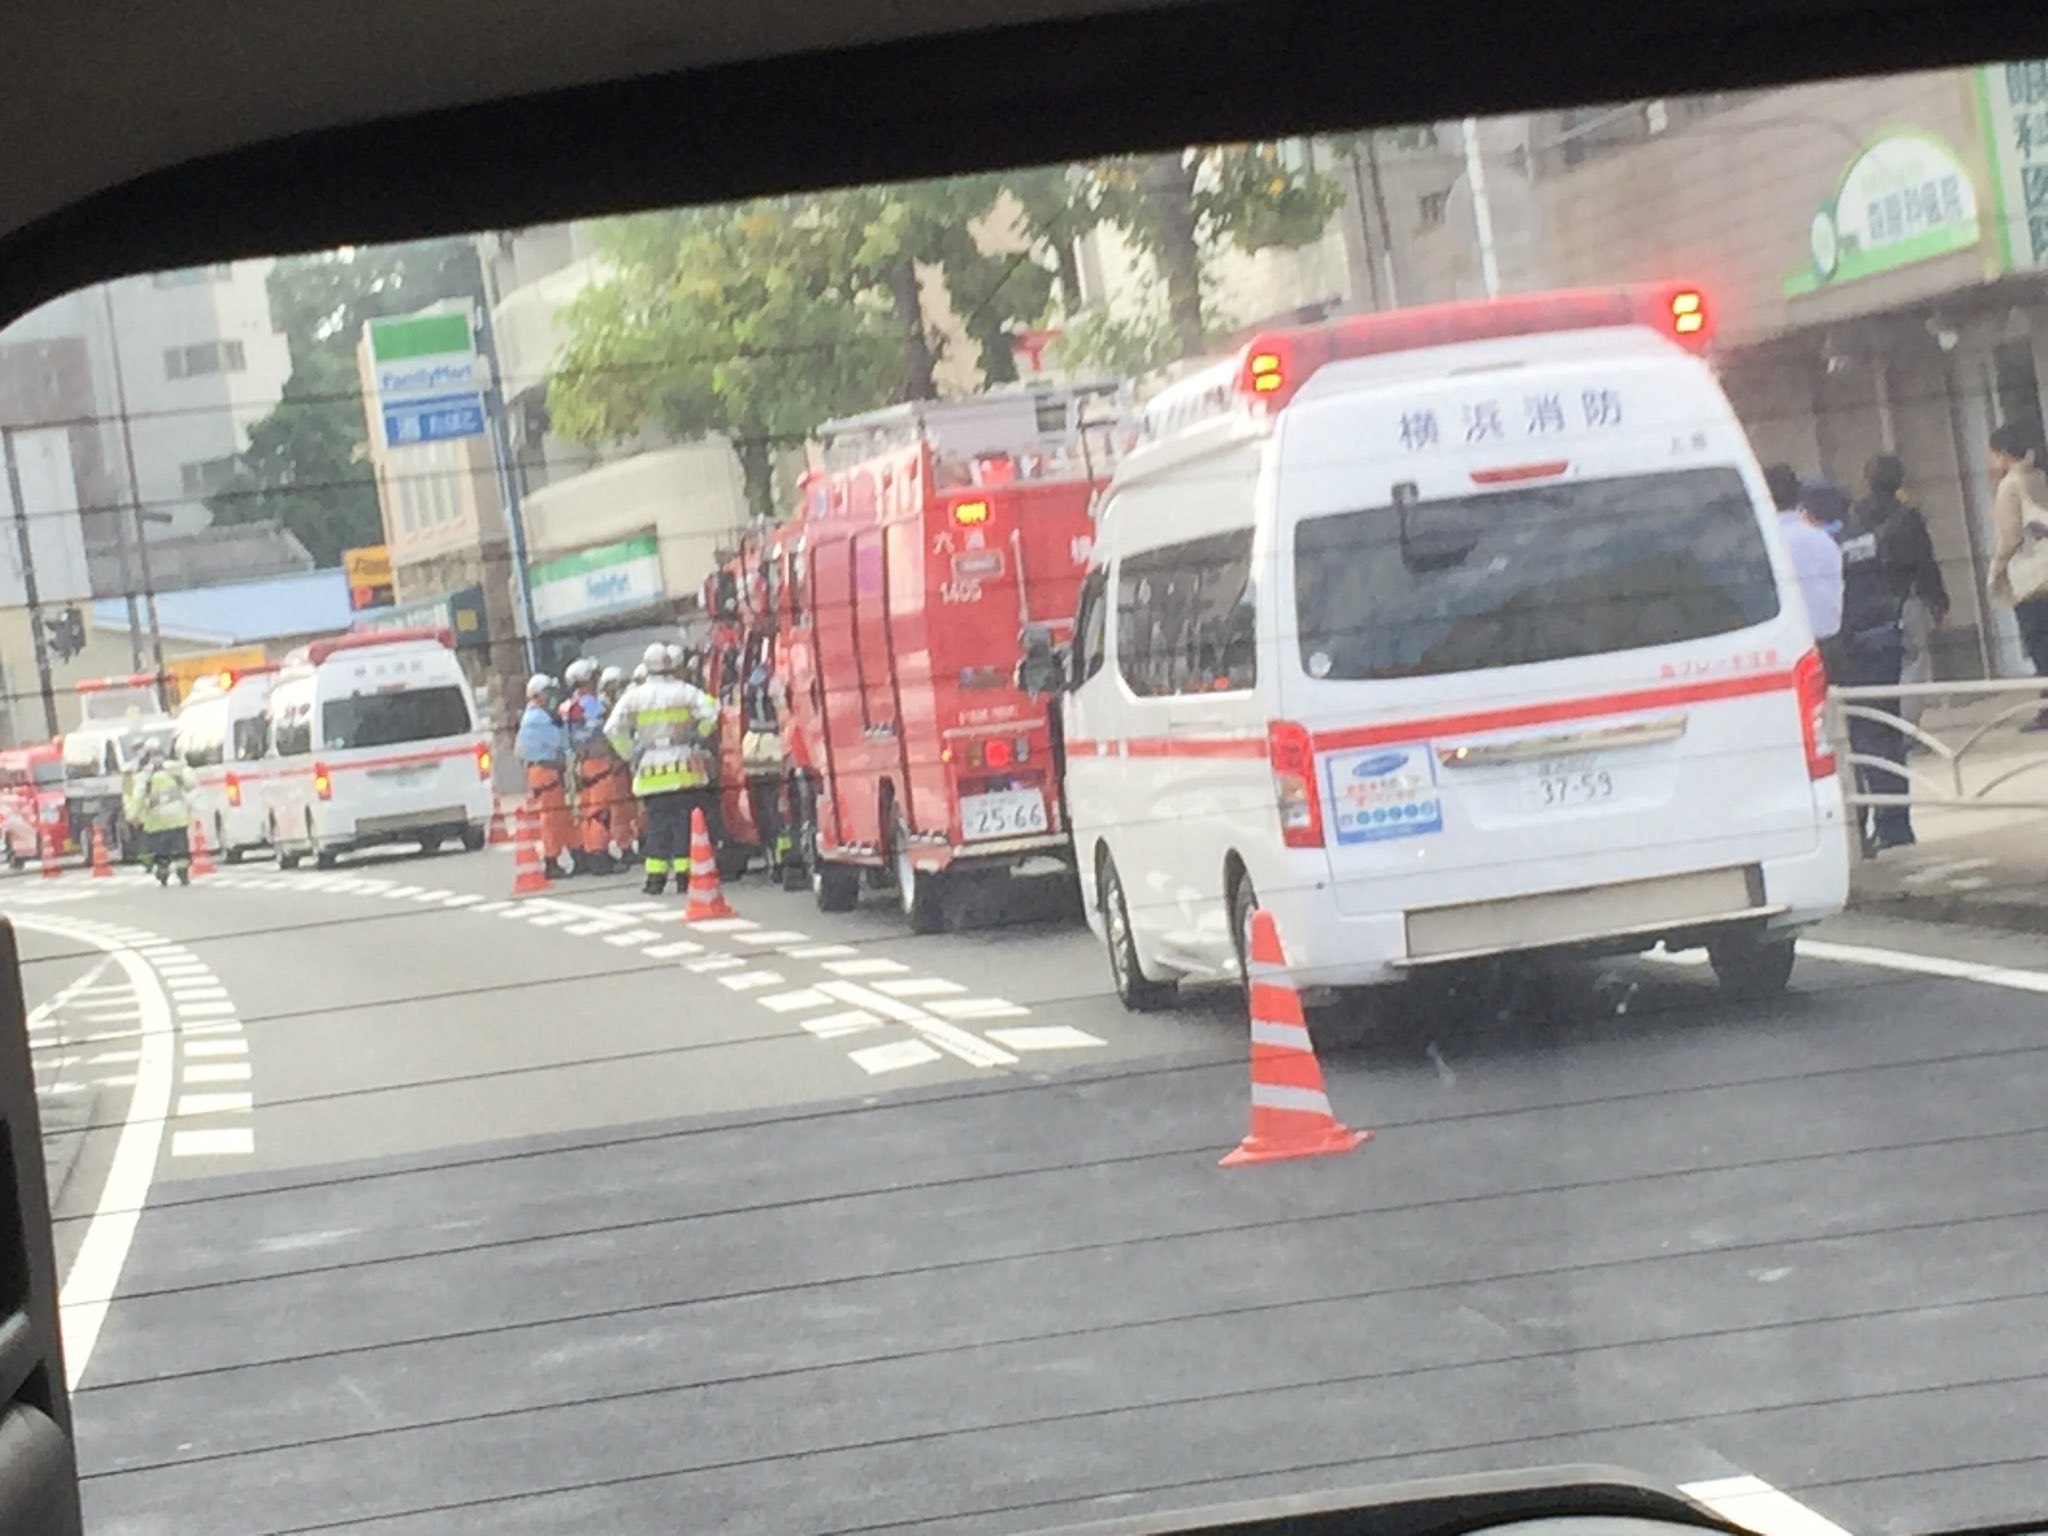 画像 六浦の郵便局前に車が突っ込んでたパトカー救急車消防車合わせて台近く来てる結構大きな事故だ T Co Qx6gy4qf7h まとめダネ